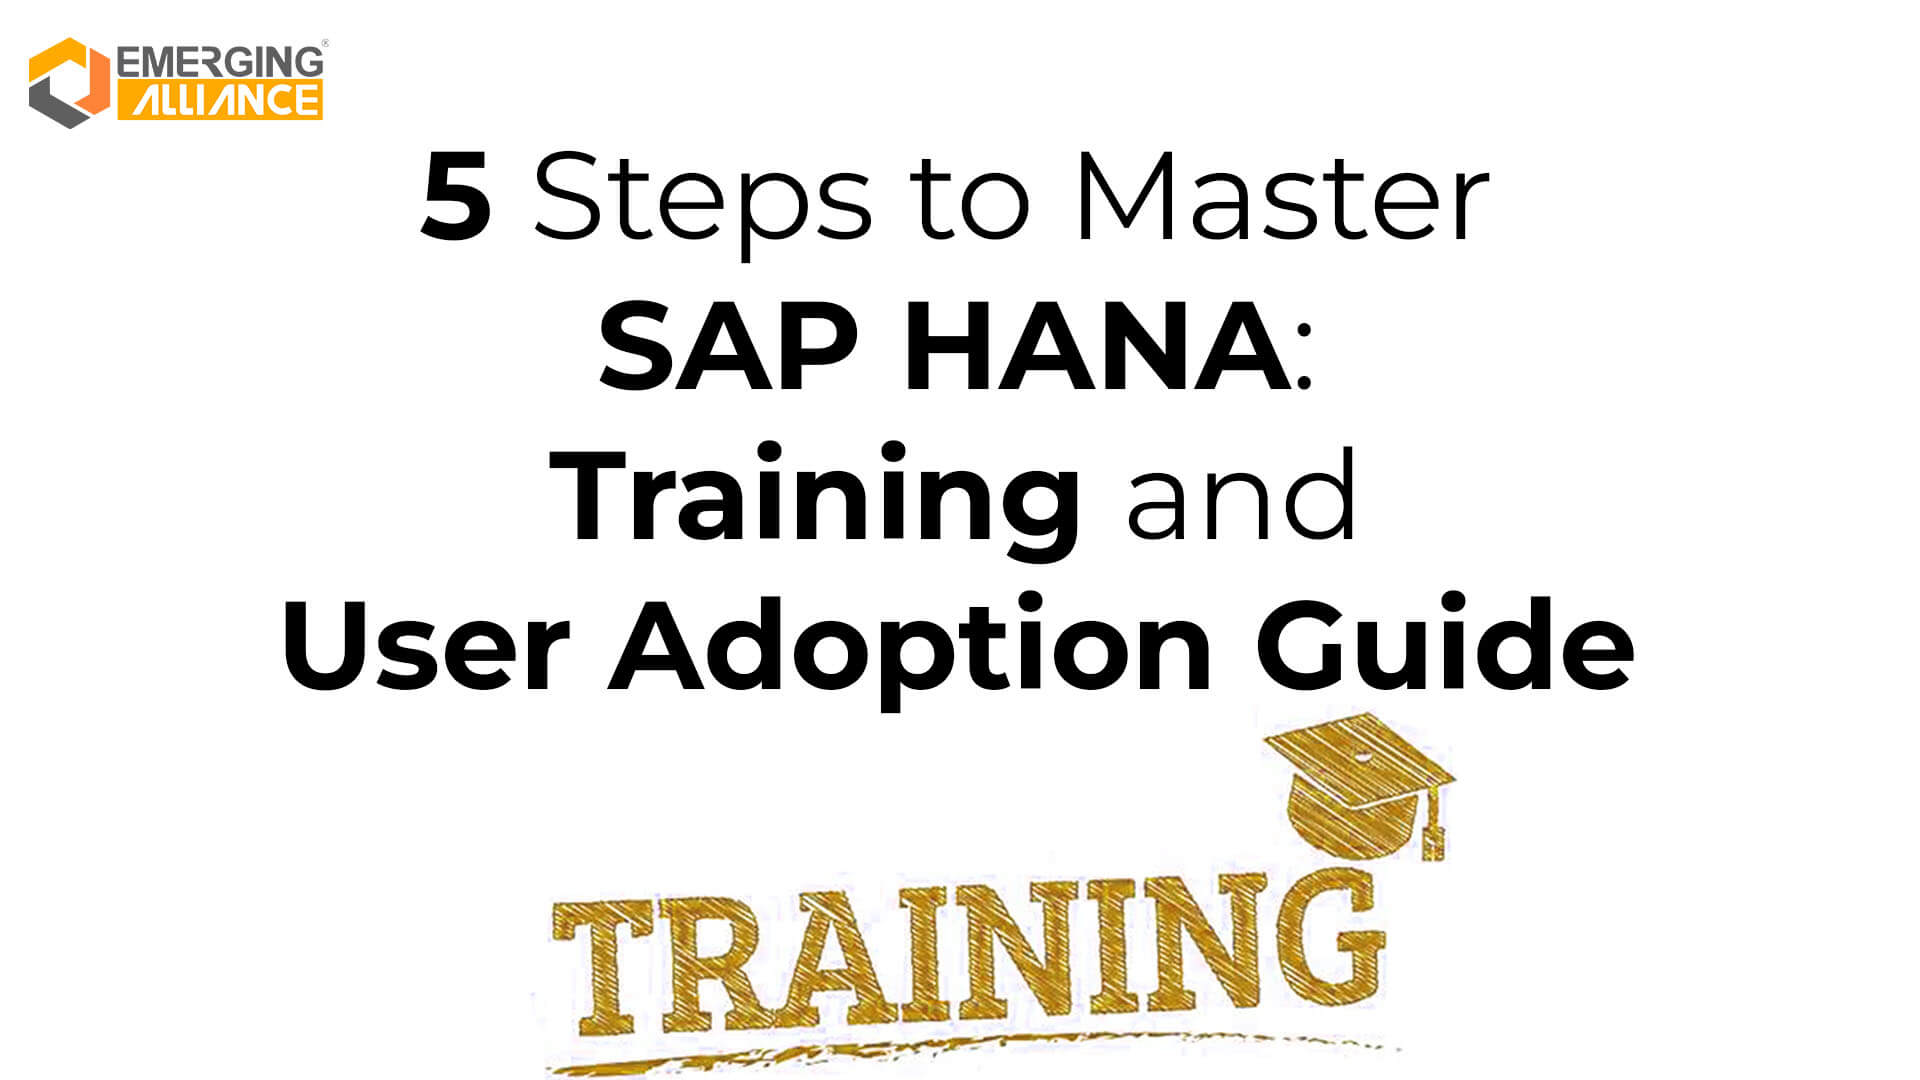 SAP HANA Training and User Adoption Guide